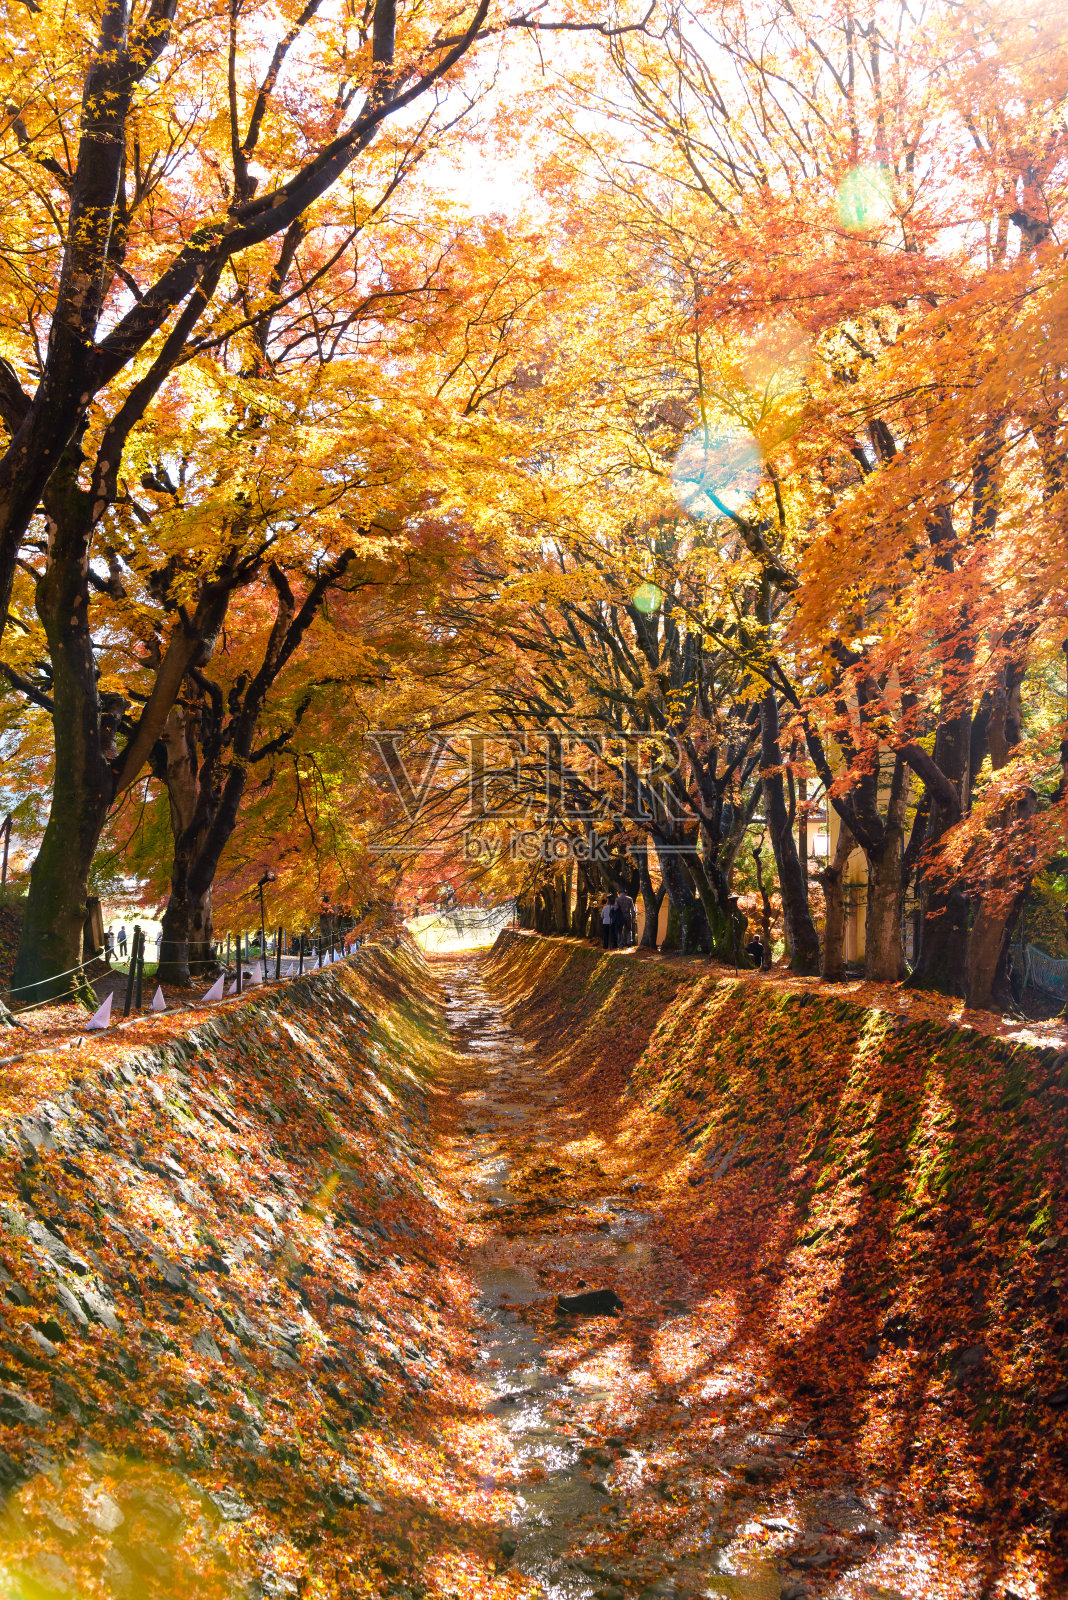 日本山梨县川口町藤吉田枫叶走廊(Momiji Kairo)的秋色照片摄影图片